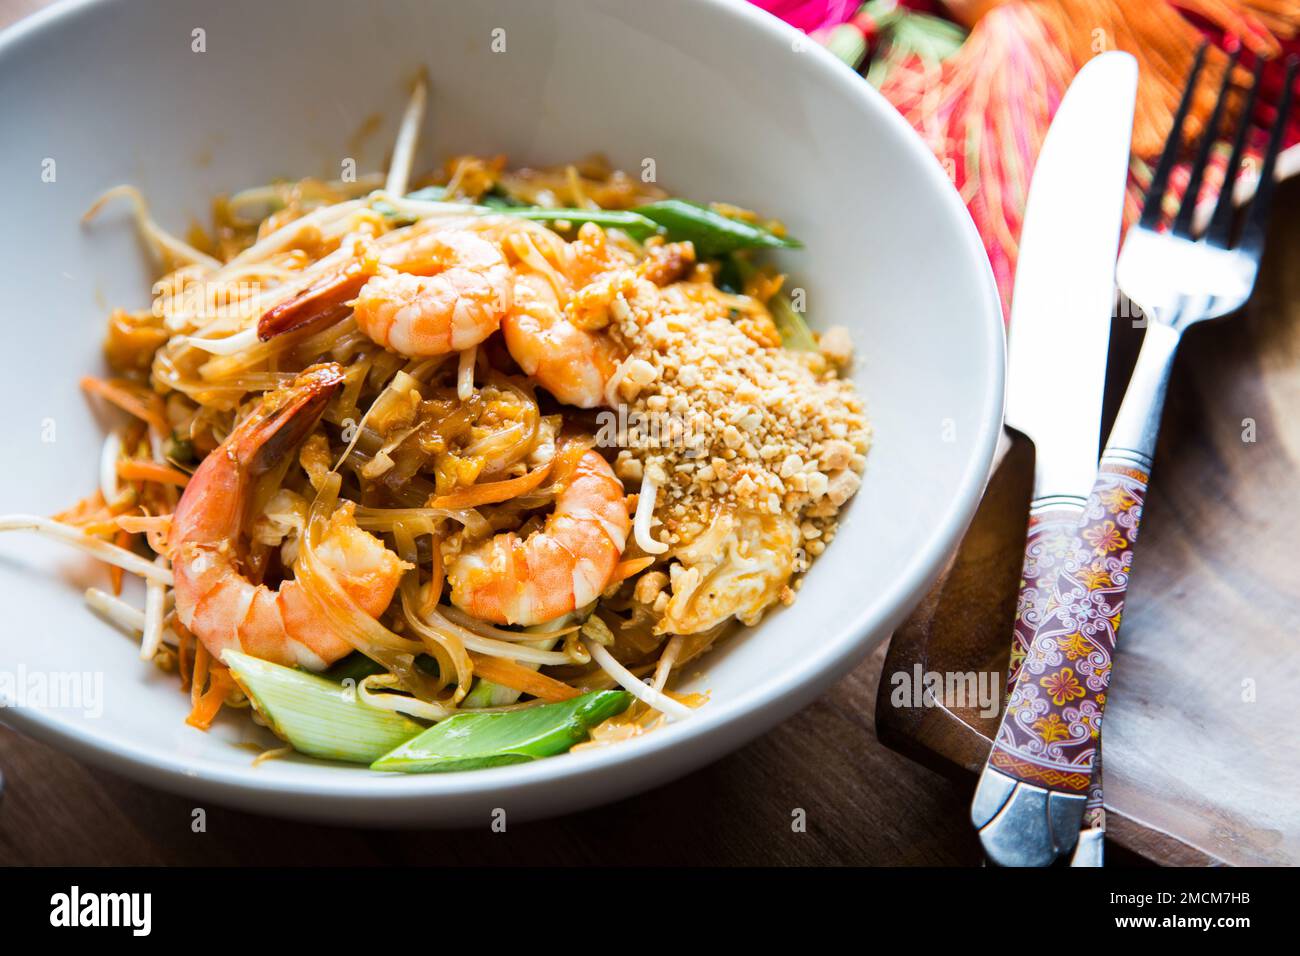 Pad thai, Pad thai oder Pad thai ist ein gebratenes Reisnudelgericht, das in Thailand oft als Street Food als Teil der Landesküche serviert wird. Stockfoto